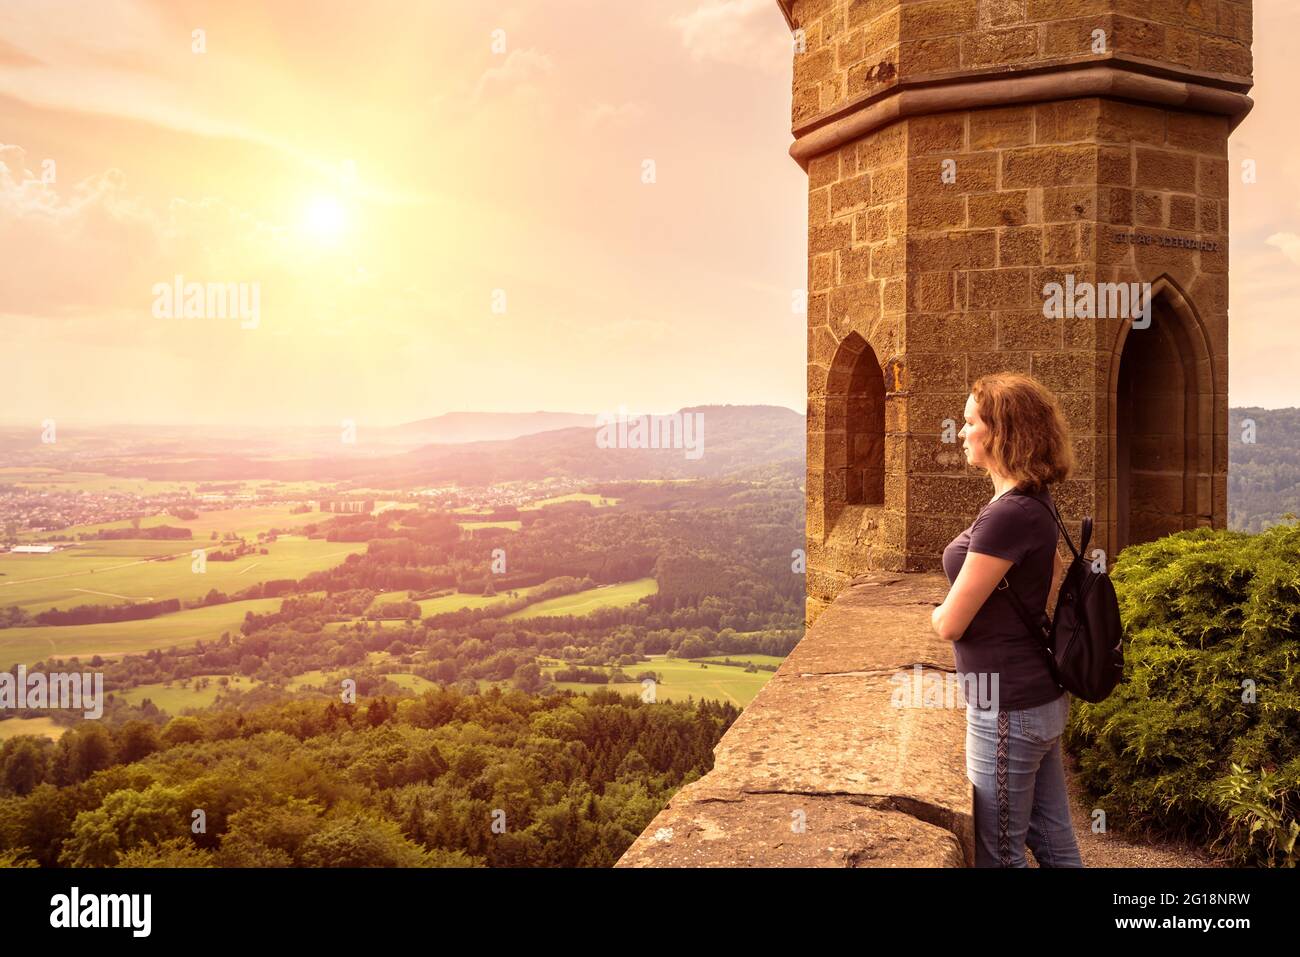 Junge Frau bewundert Landschaft bei Sonnenuntergang auf Schloss Hohenzollern, Deutschland. Dieser Ort ist eine Touristenattraktion in der Nähe von Stuttgart. Landschaftlich schöner Blick auf das sonnige Tal Stockfoto